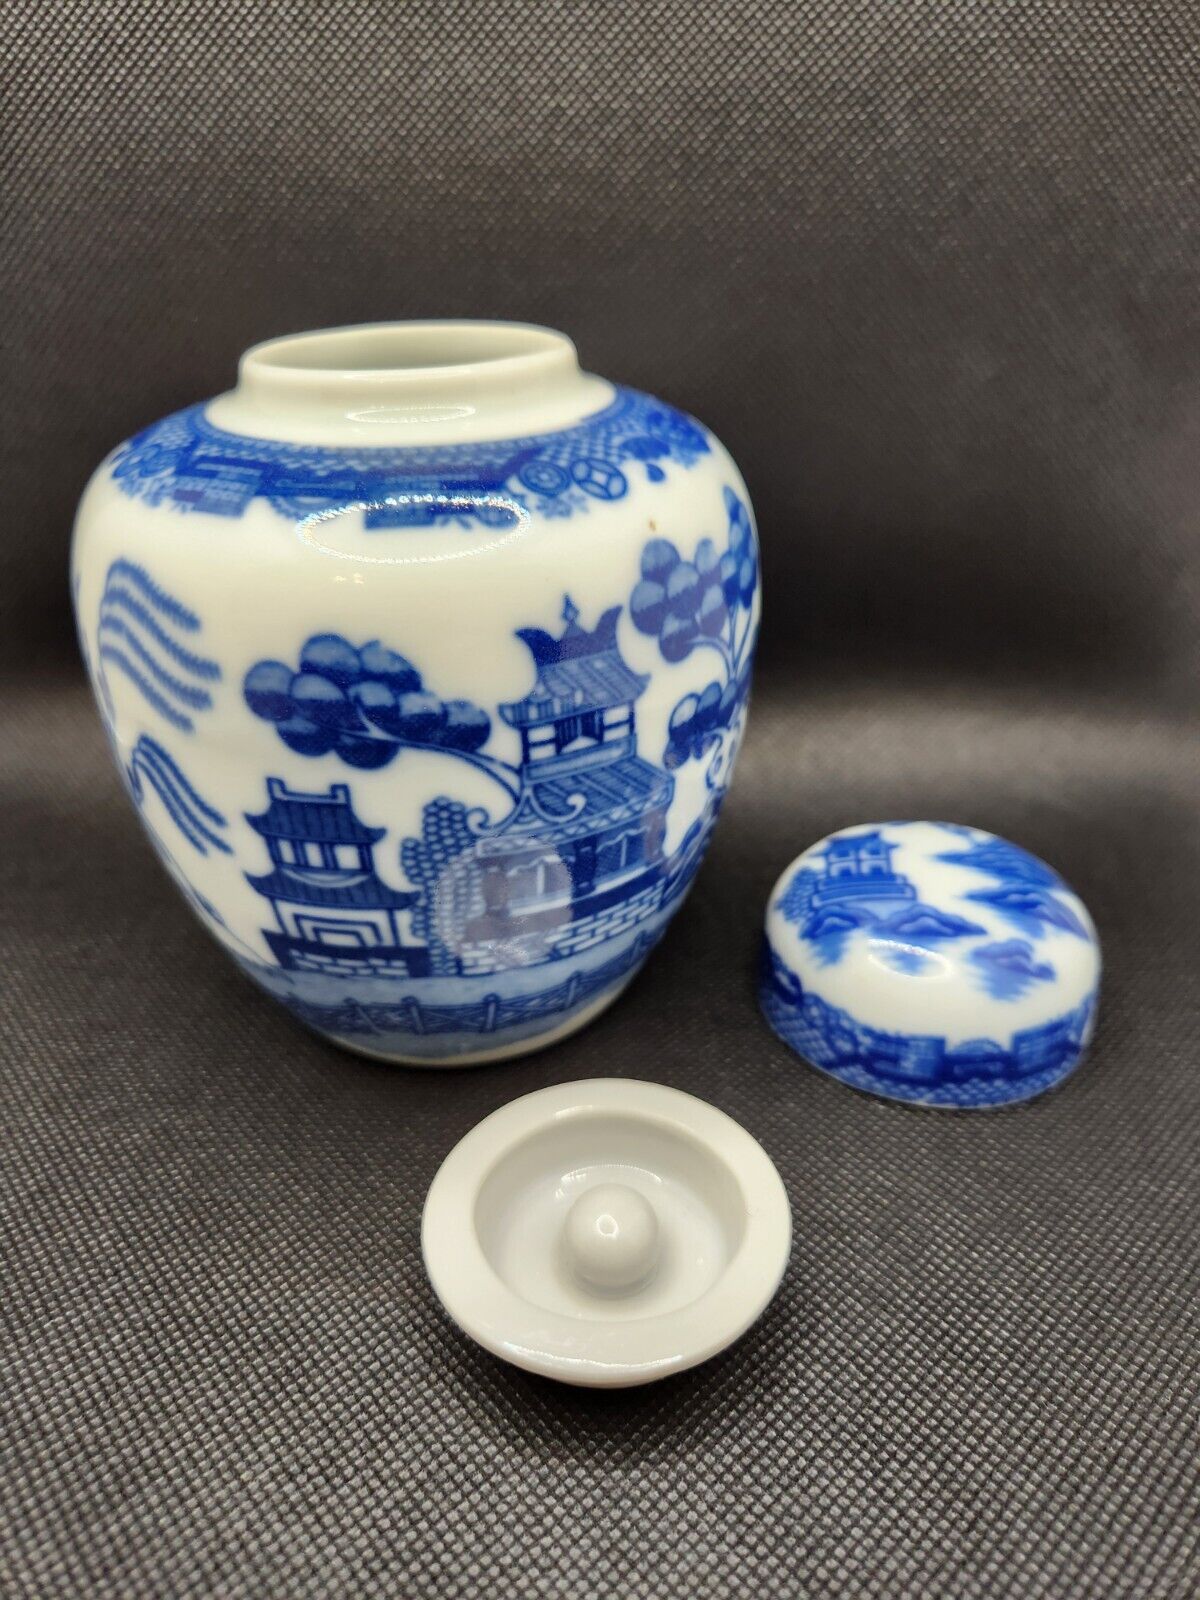 VINTAGE BLUE AND WHITE TEA/GINGER JAR With Lids Lsco Japan 